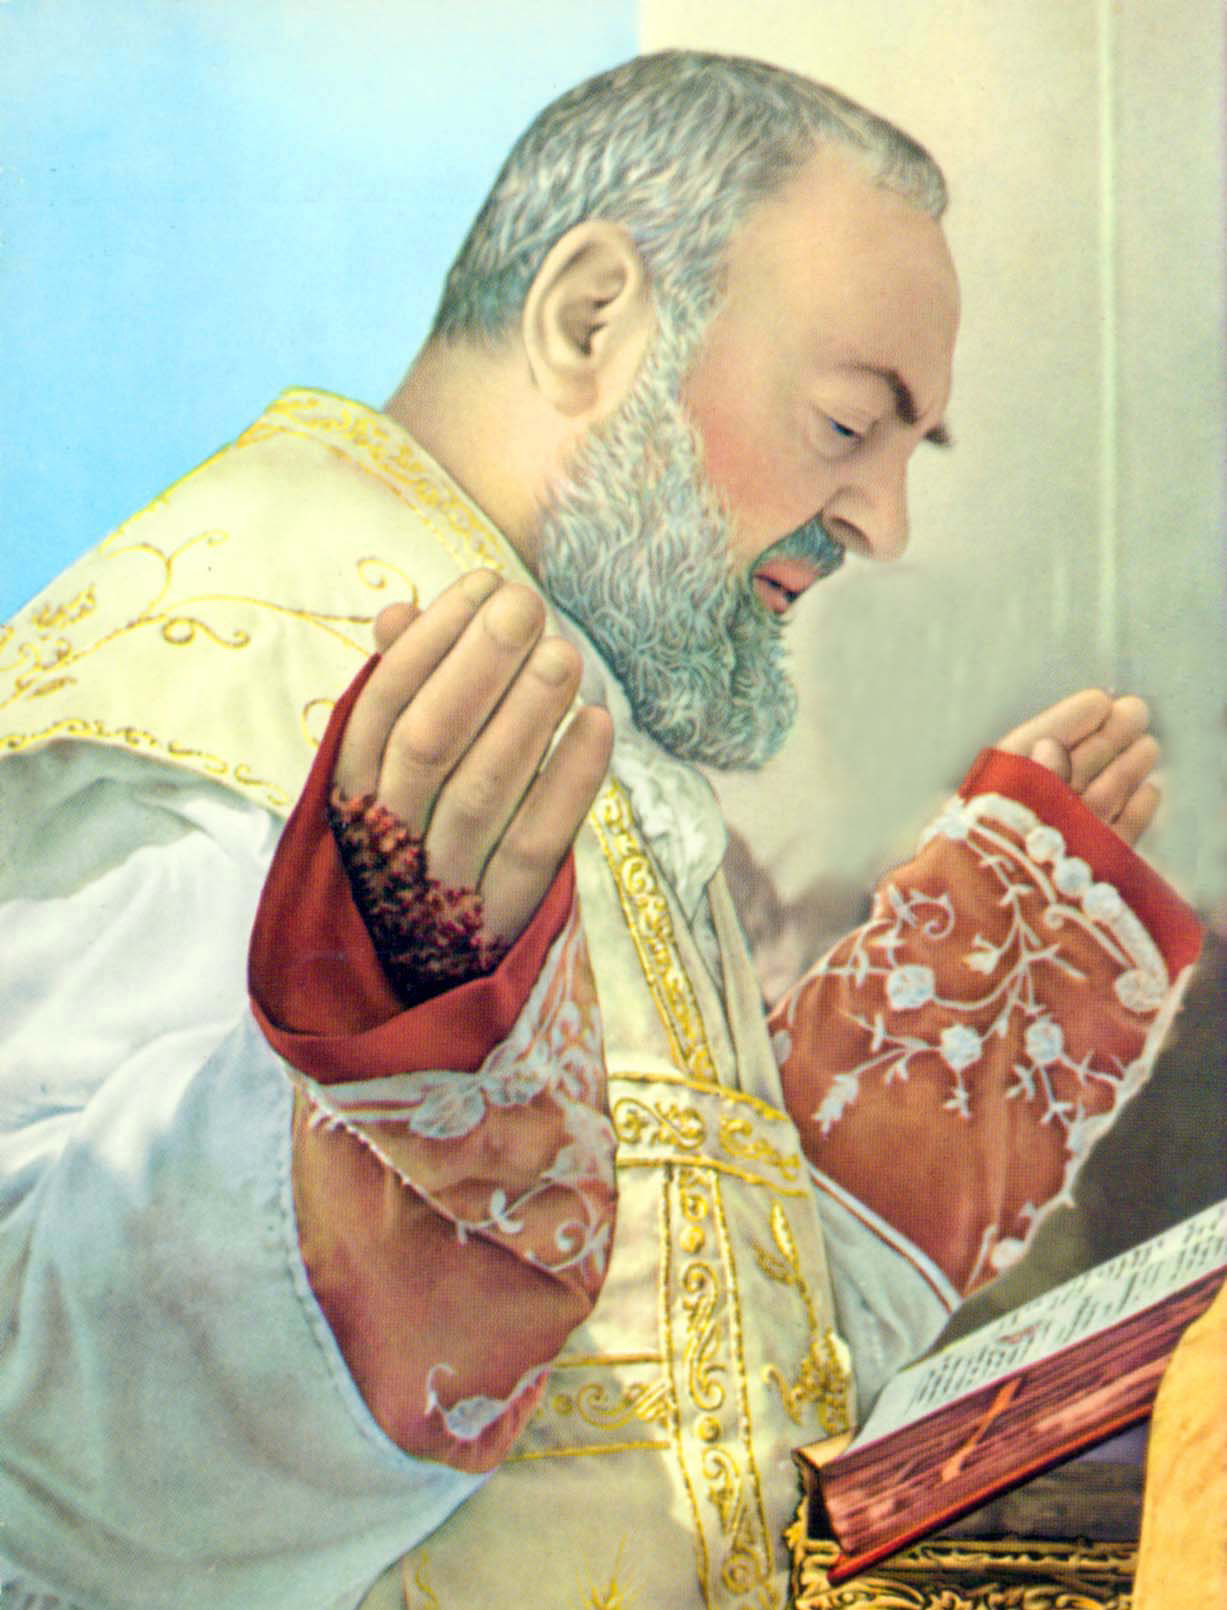 <a href="sao-pio-de-pietrelcina/" title="São Pio de Pietrelcina">São Pio de Pietrelcina<br><br>Ver mais</a>